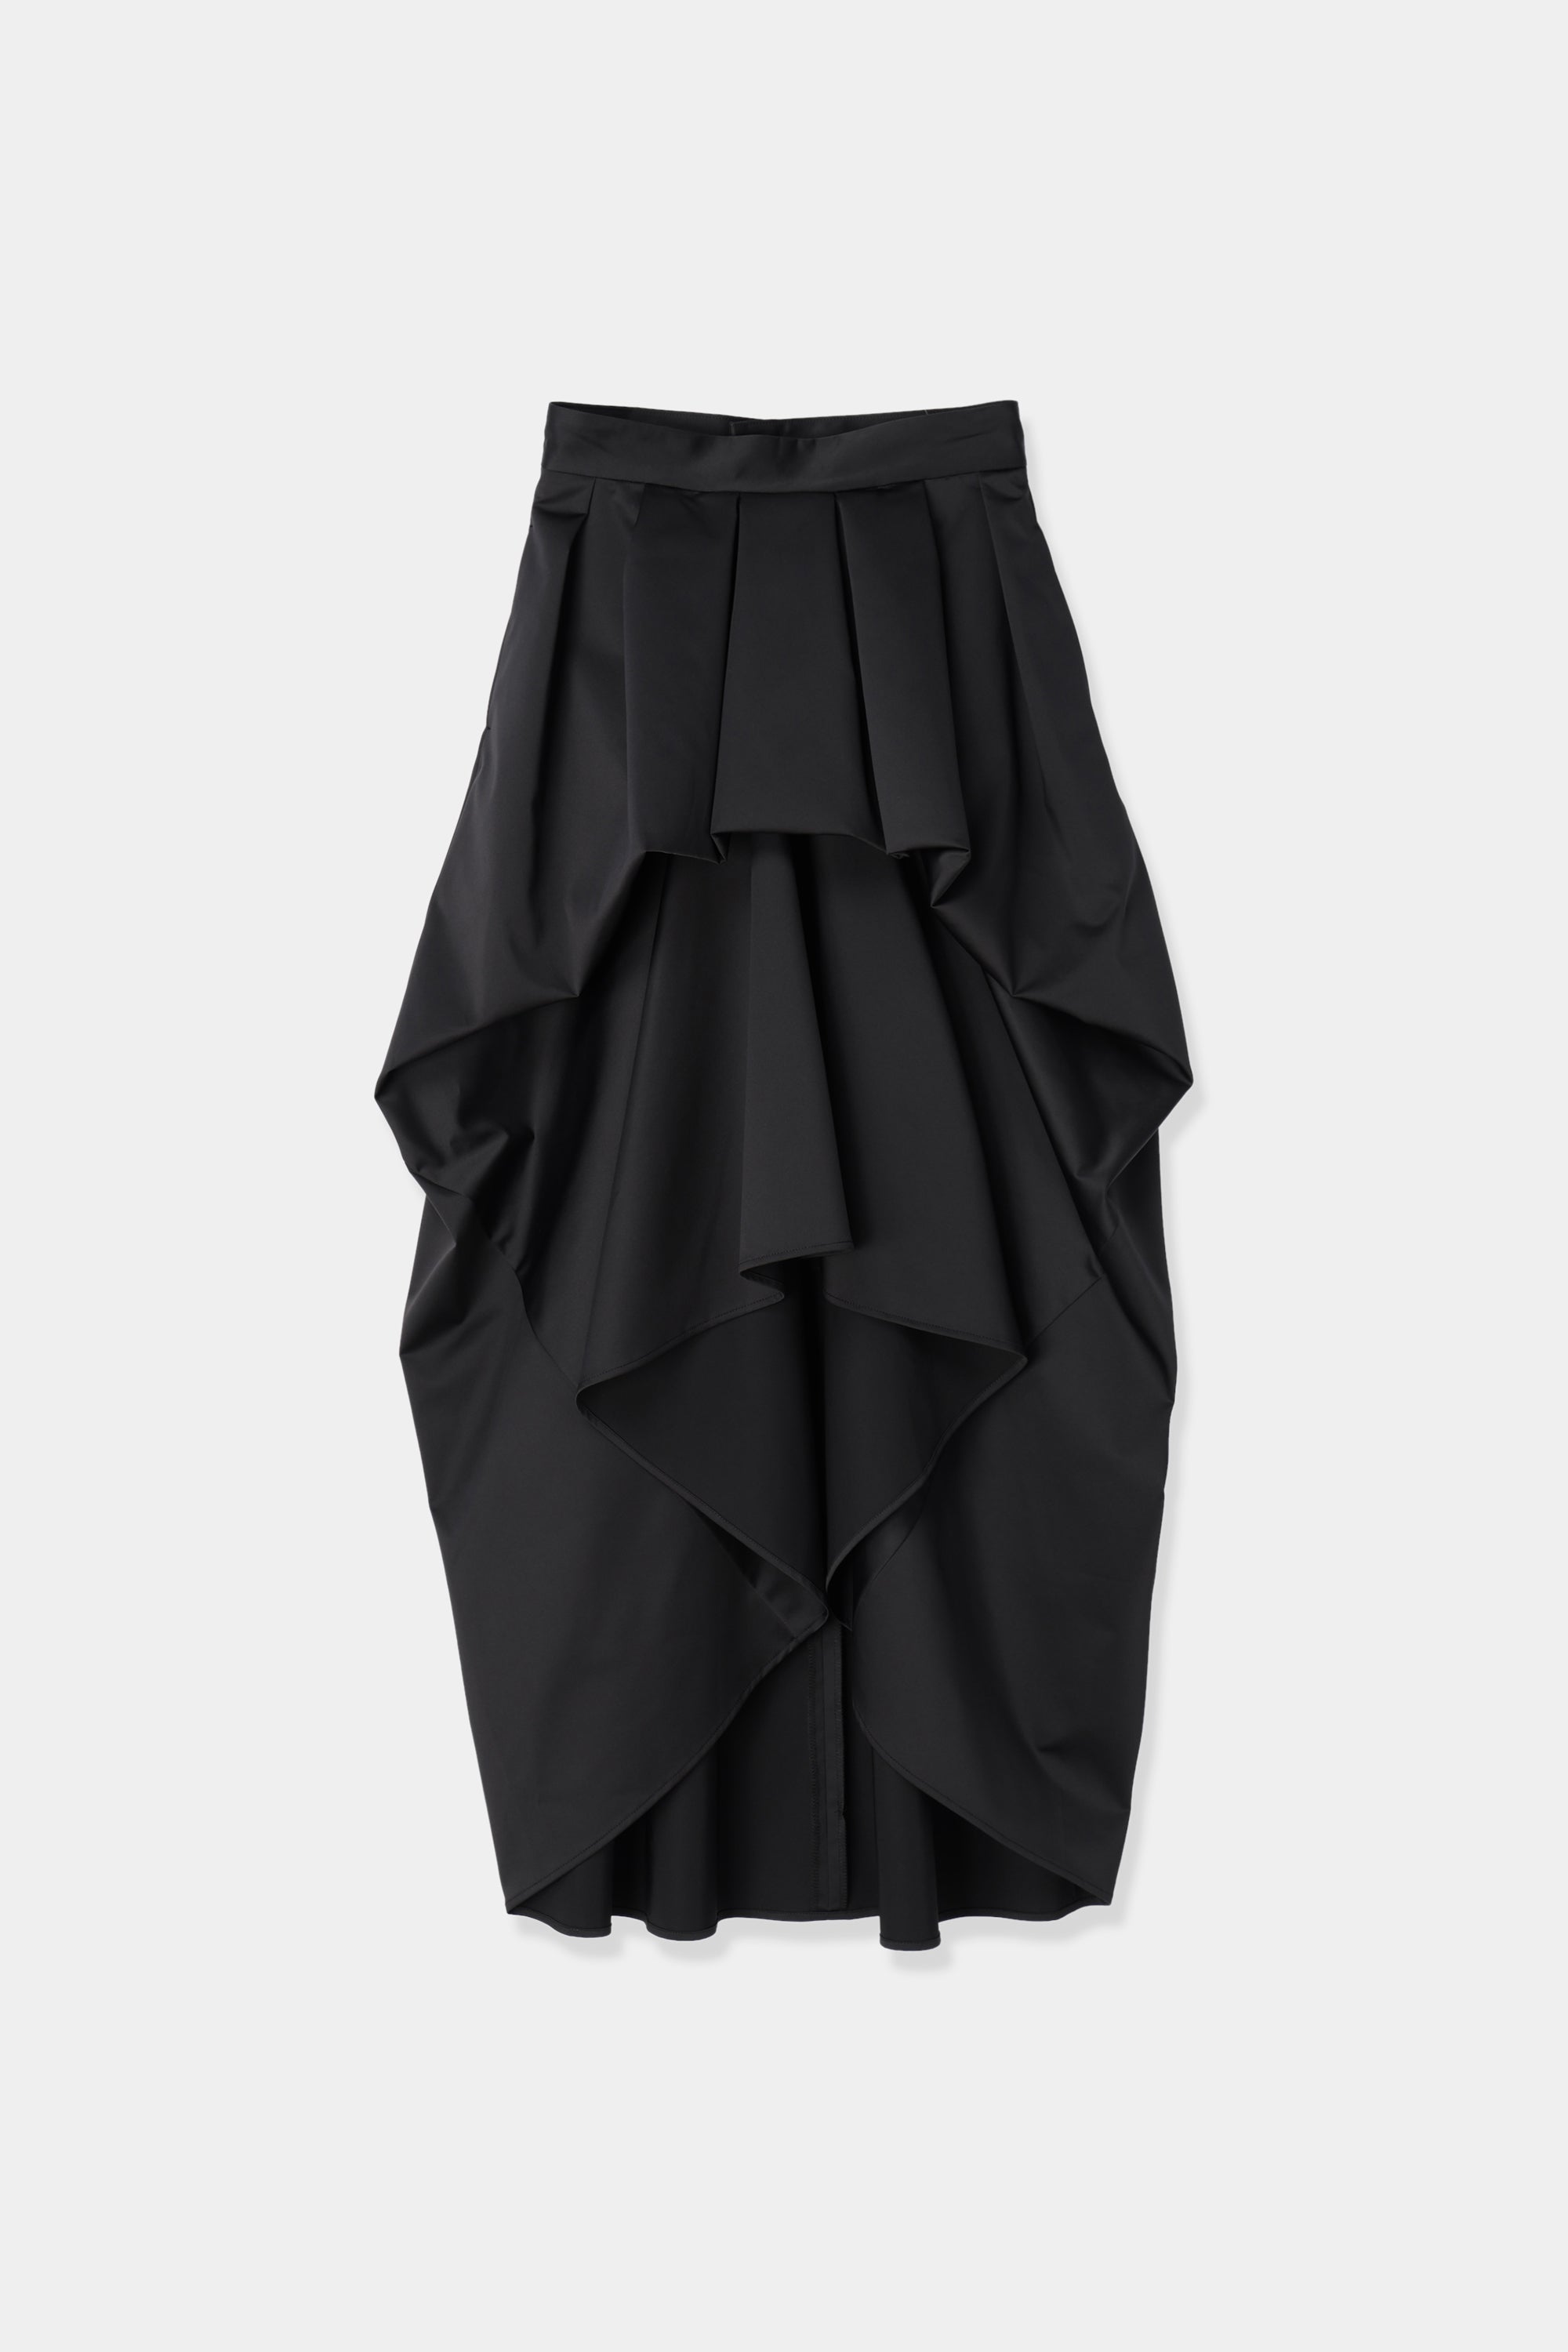 Louren design taffeta skirt